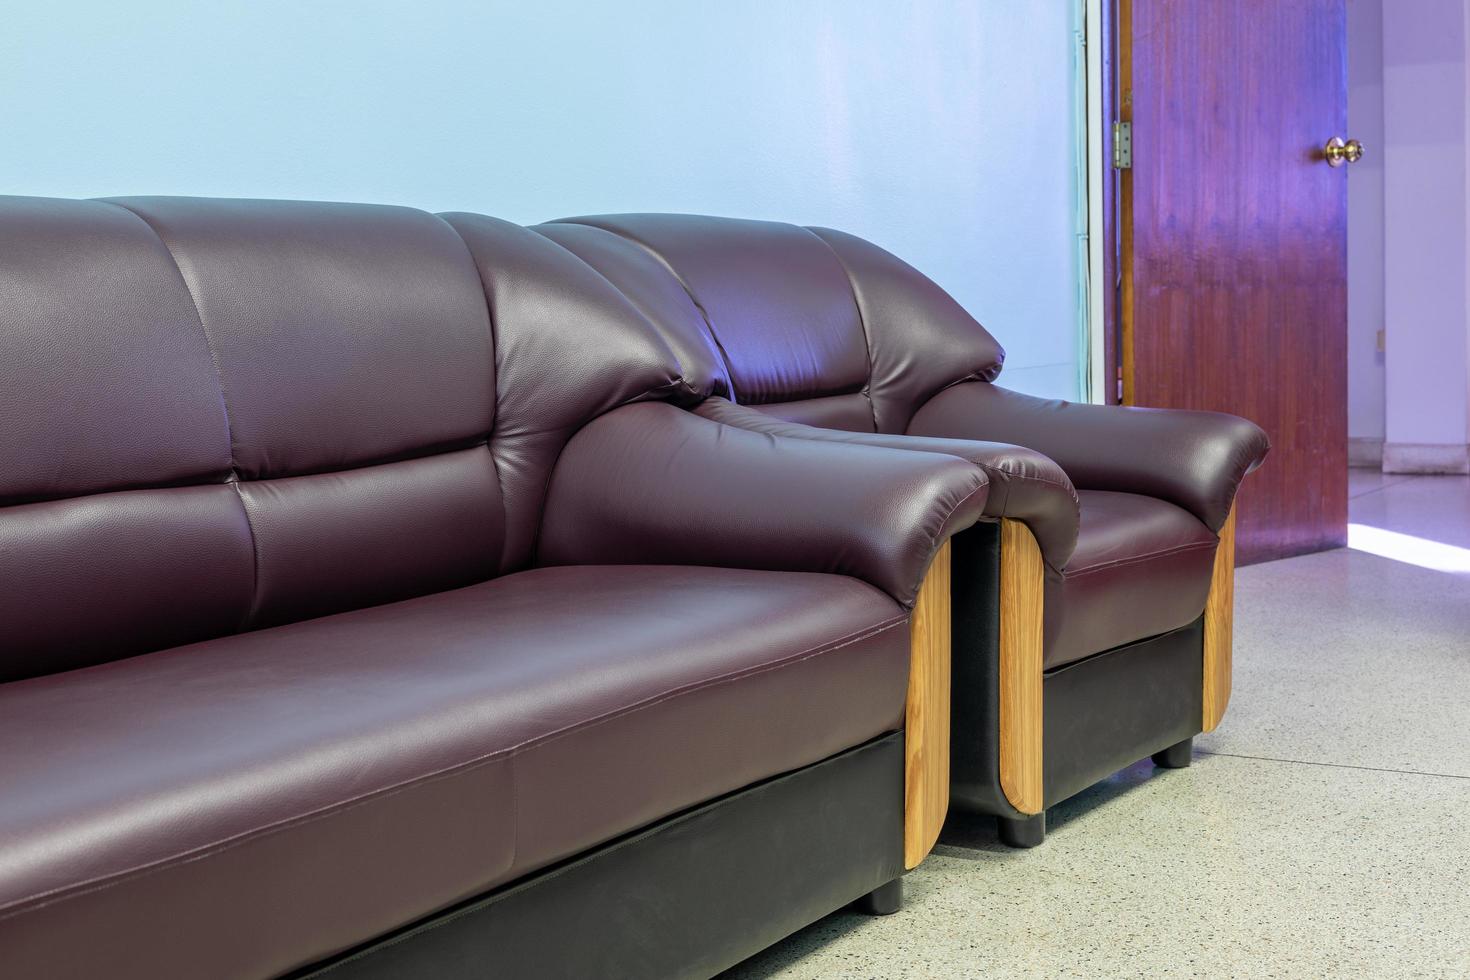 due divani chaise long marroni nella stanza con pareti blu e porte in legno. foto